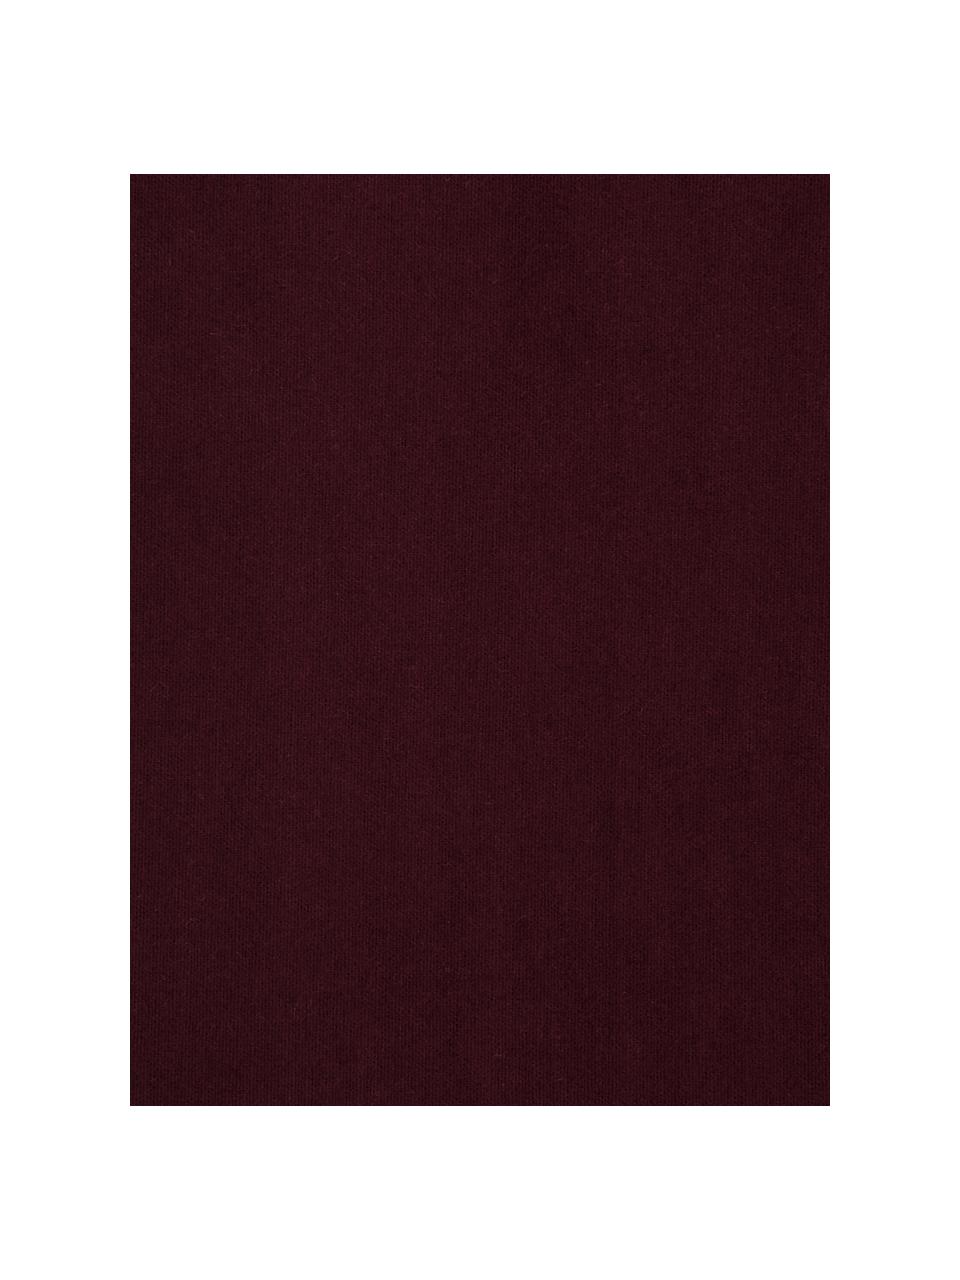 Lenzuolo con angoli in flanella color rosso scuro Biba, Tessuto: flanella La flanella è un, Rosso scuro, Larg. 180 x Lung. 200 cm